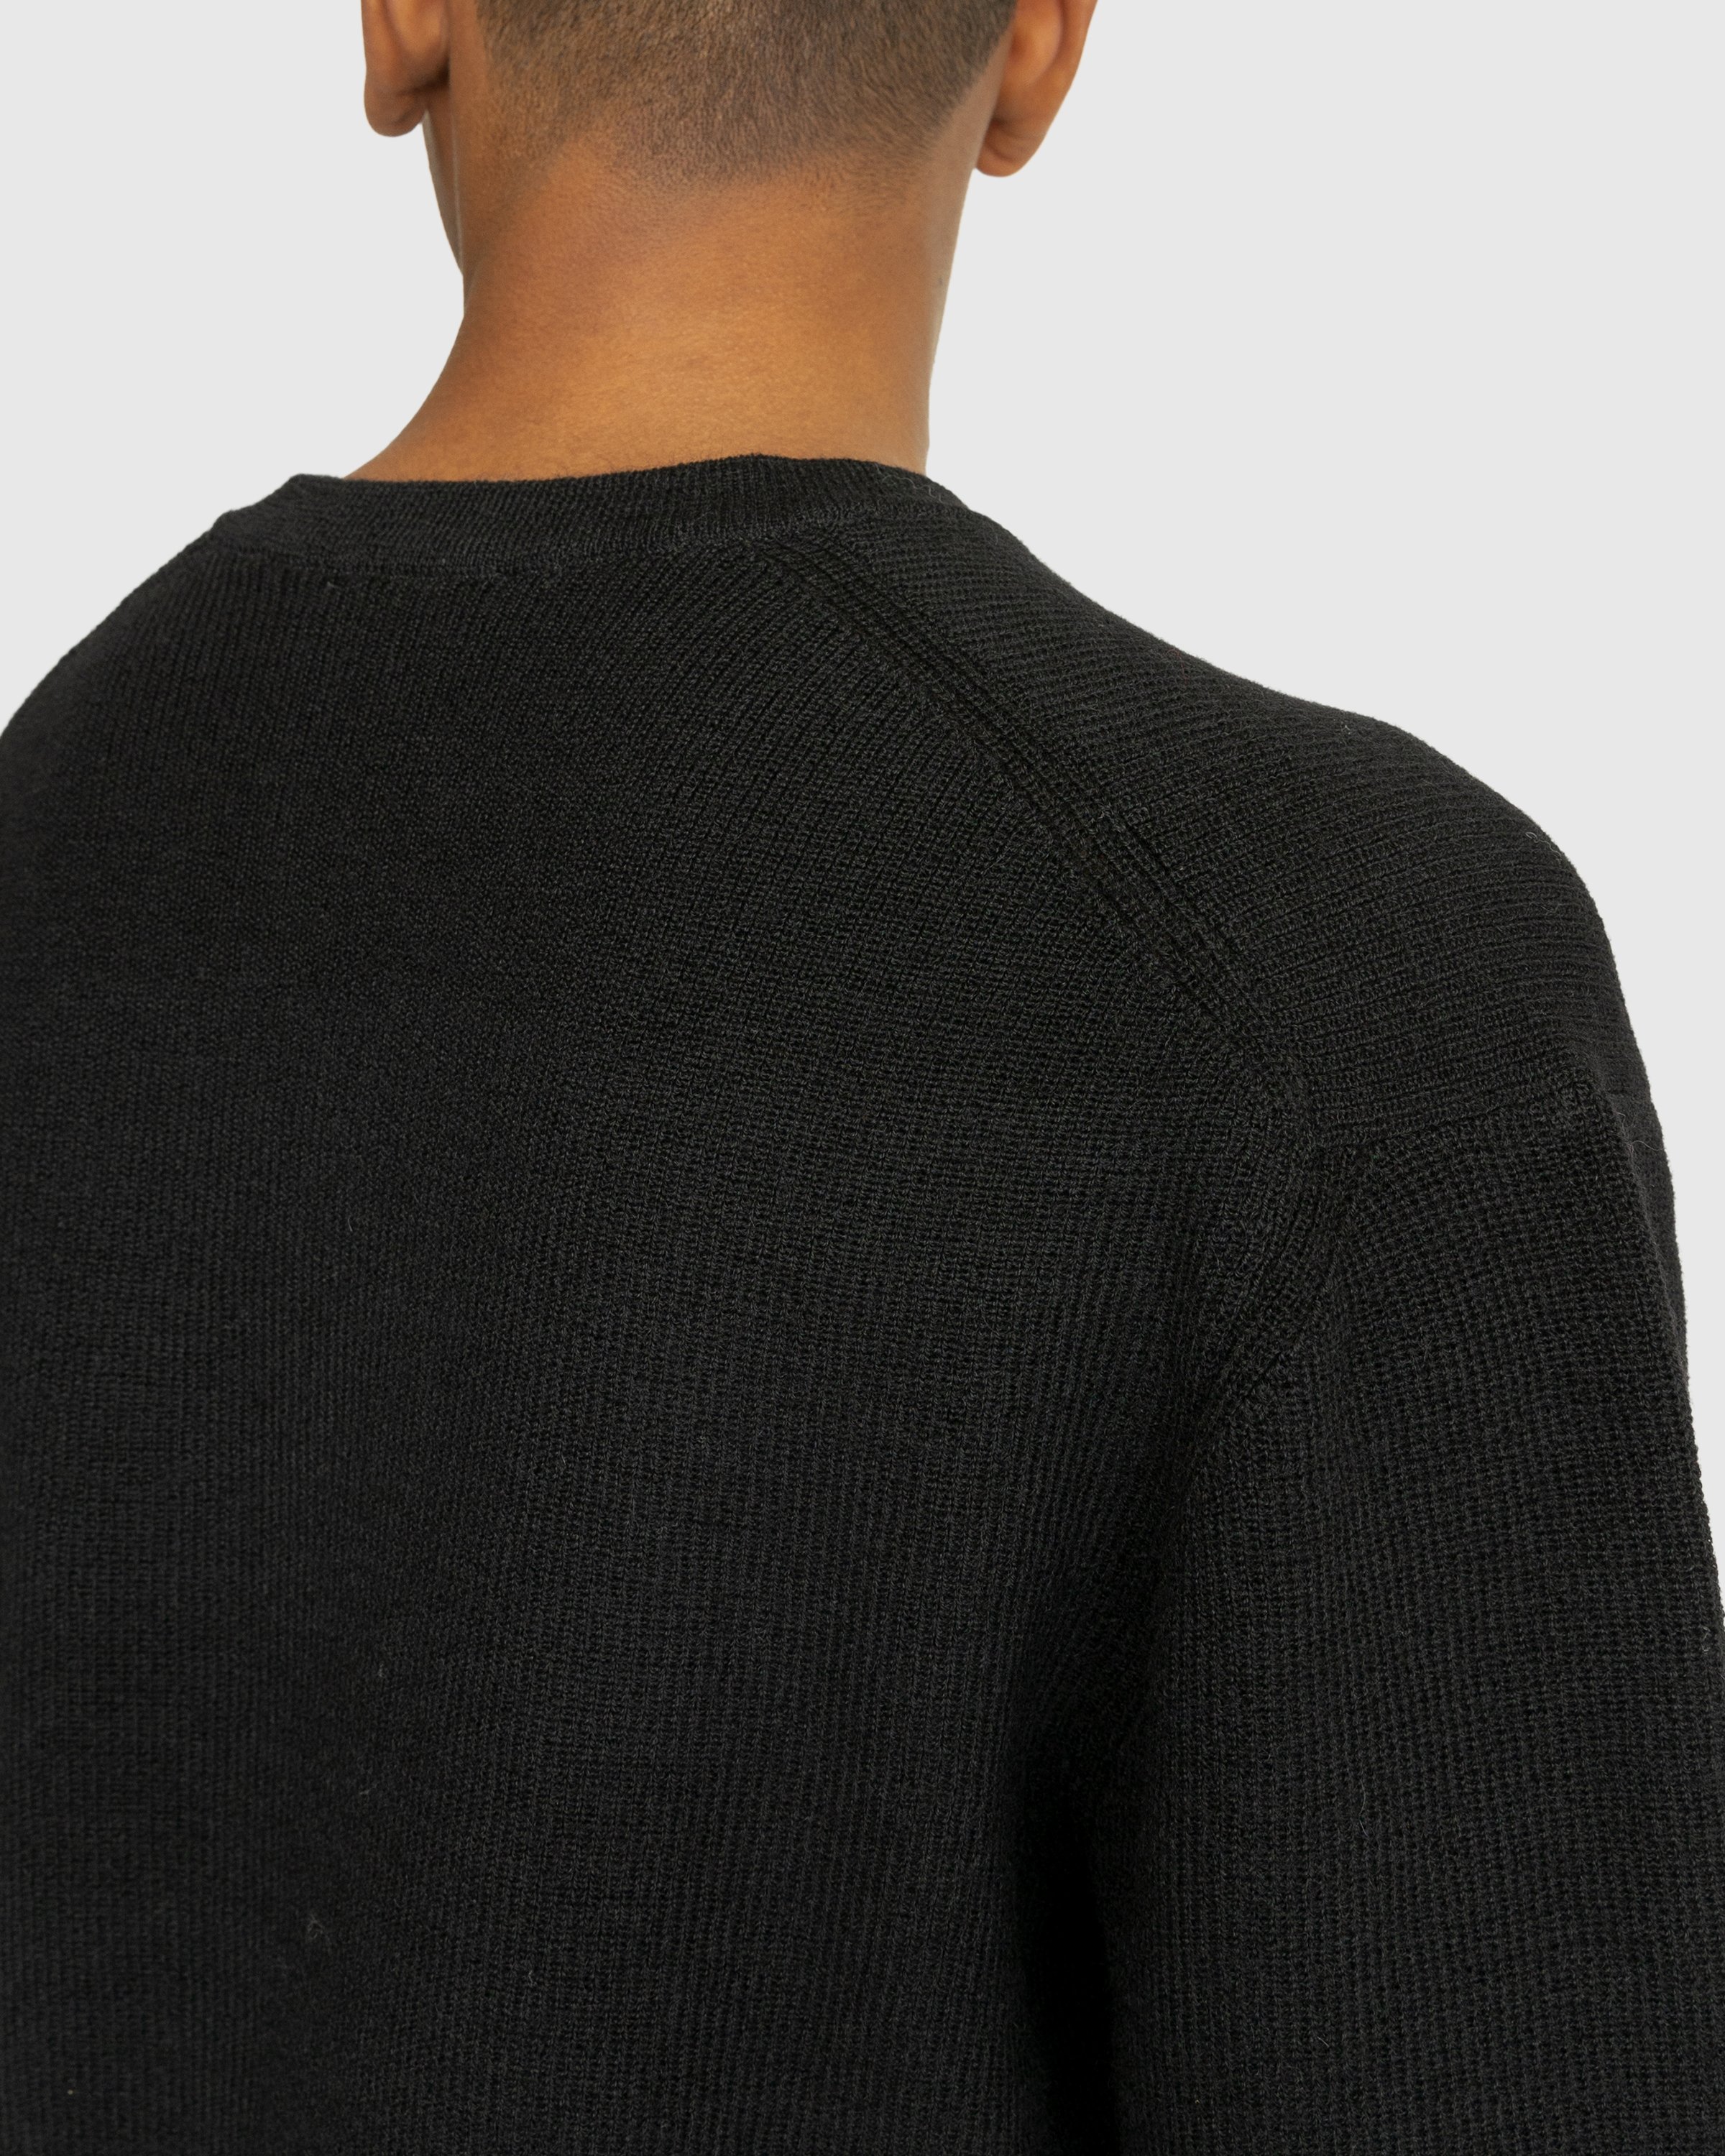 Lemaire - V Neck Sweater Black - Clothing - Multi - Image 5